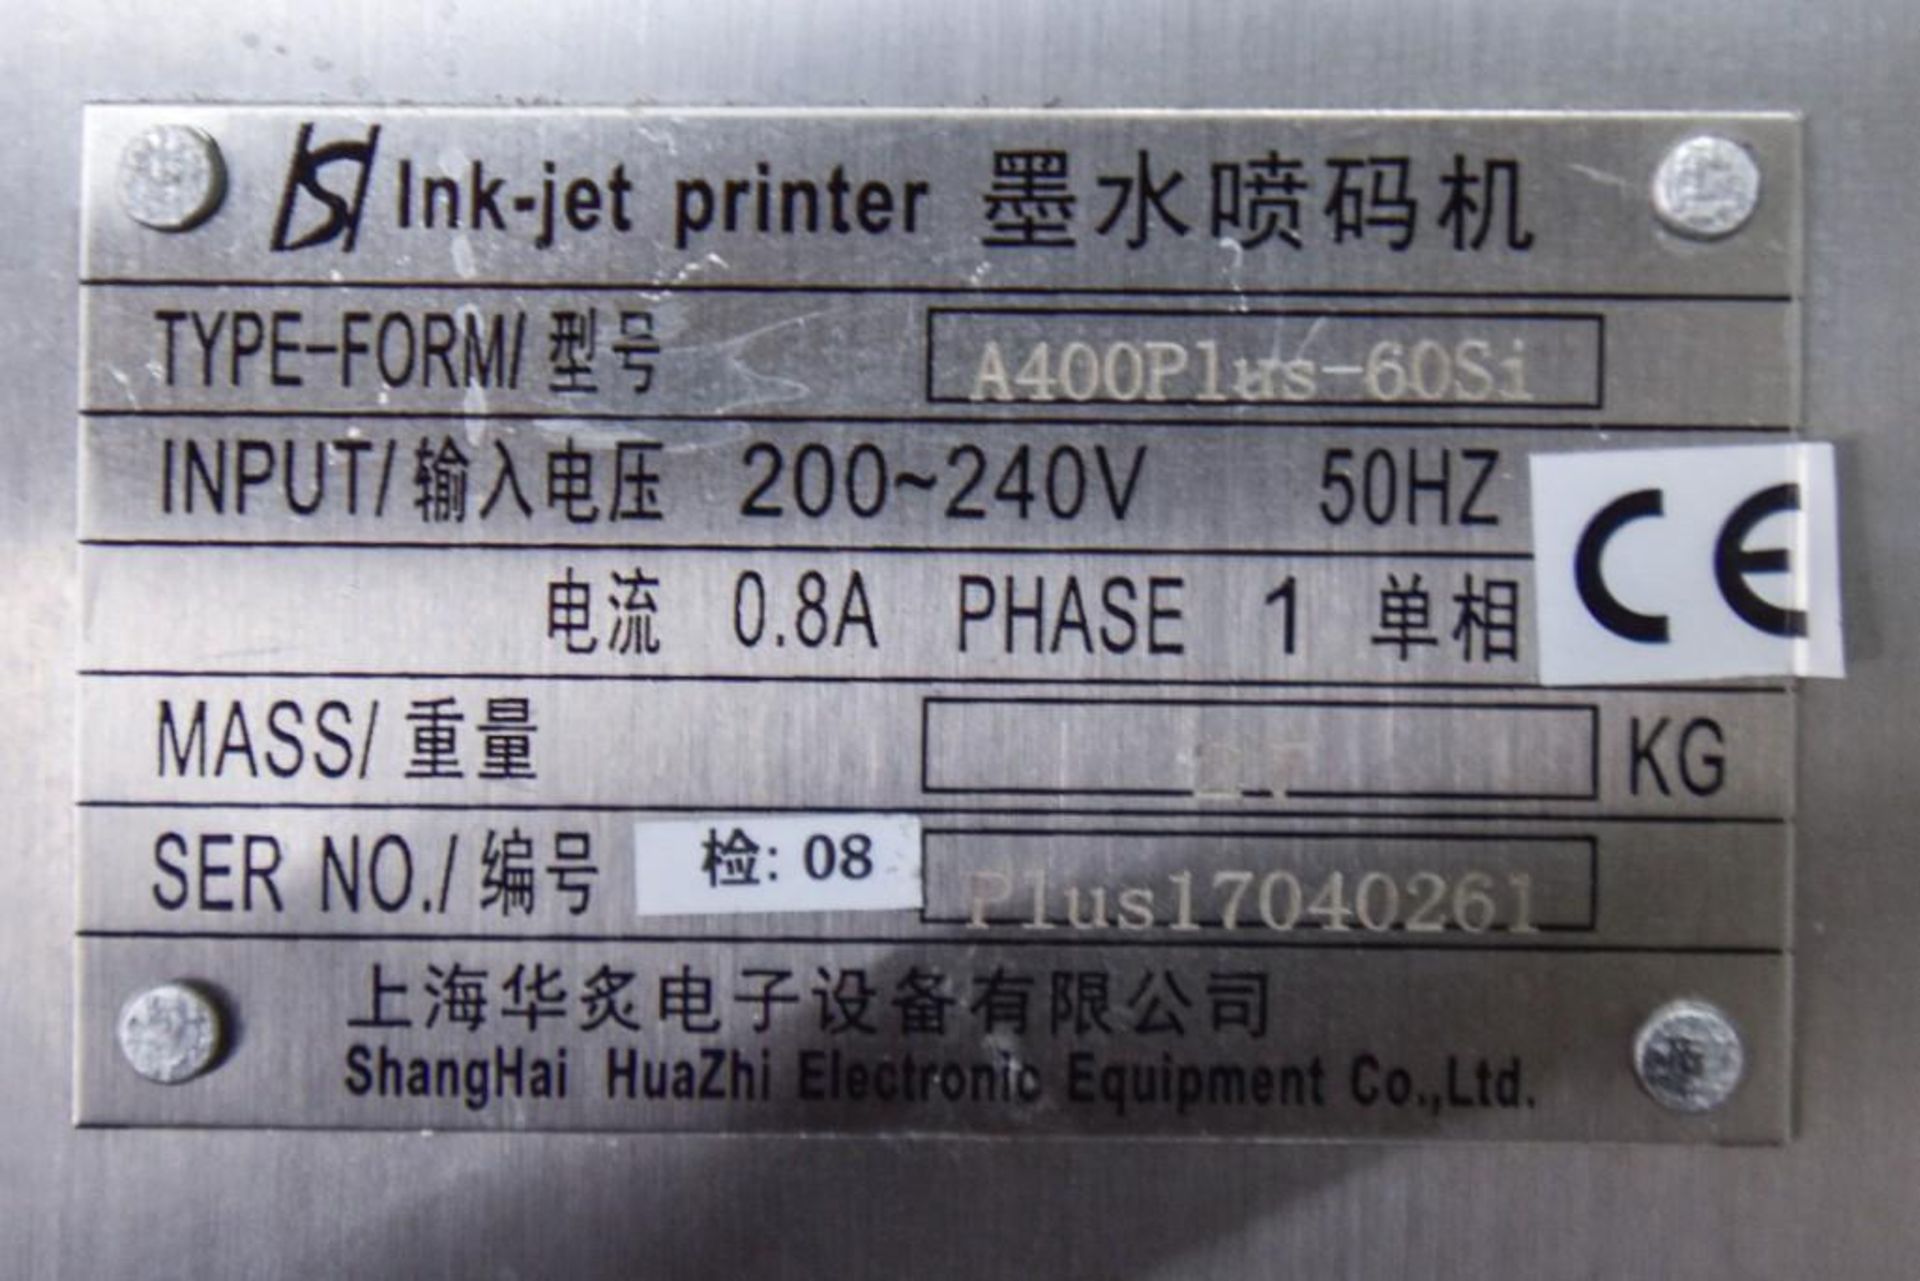 Nicejet Inkjet Printer - Image 4 of 4